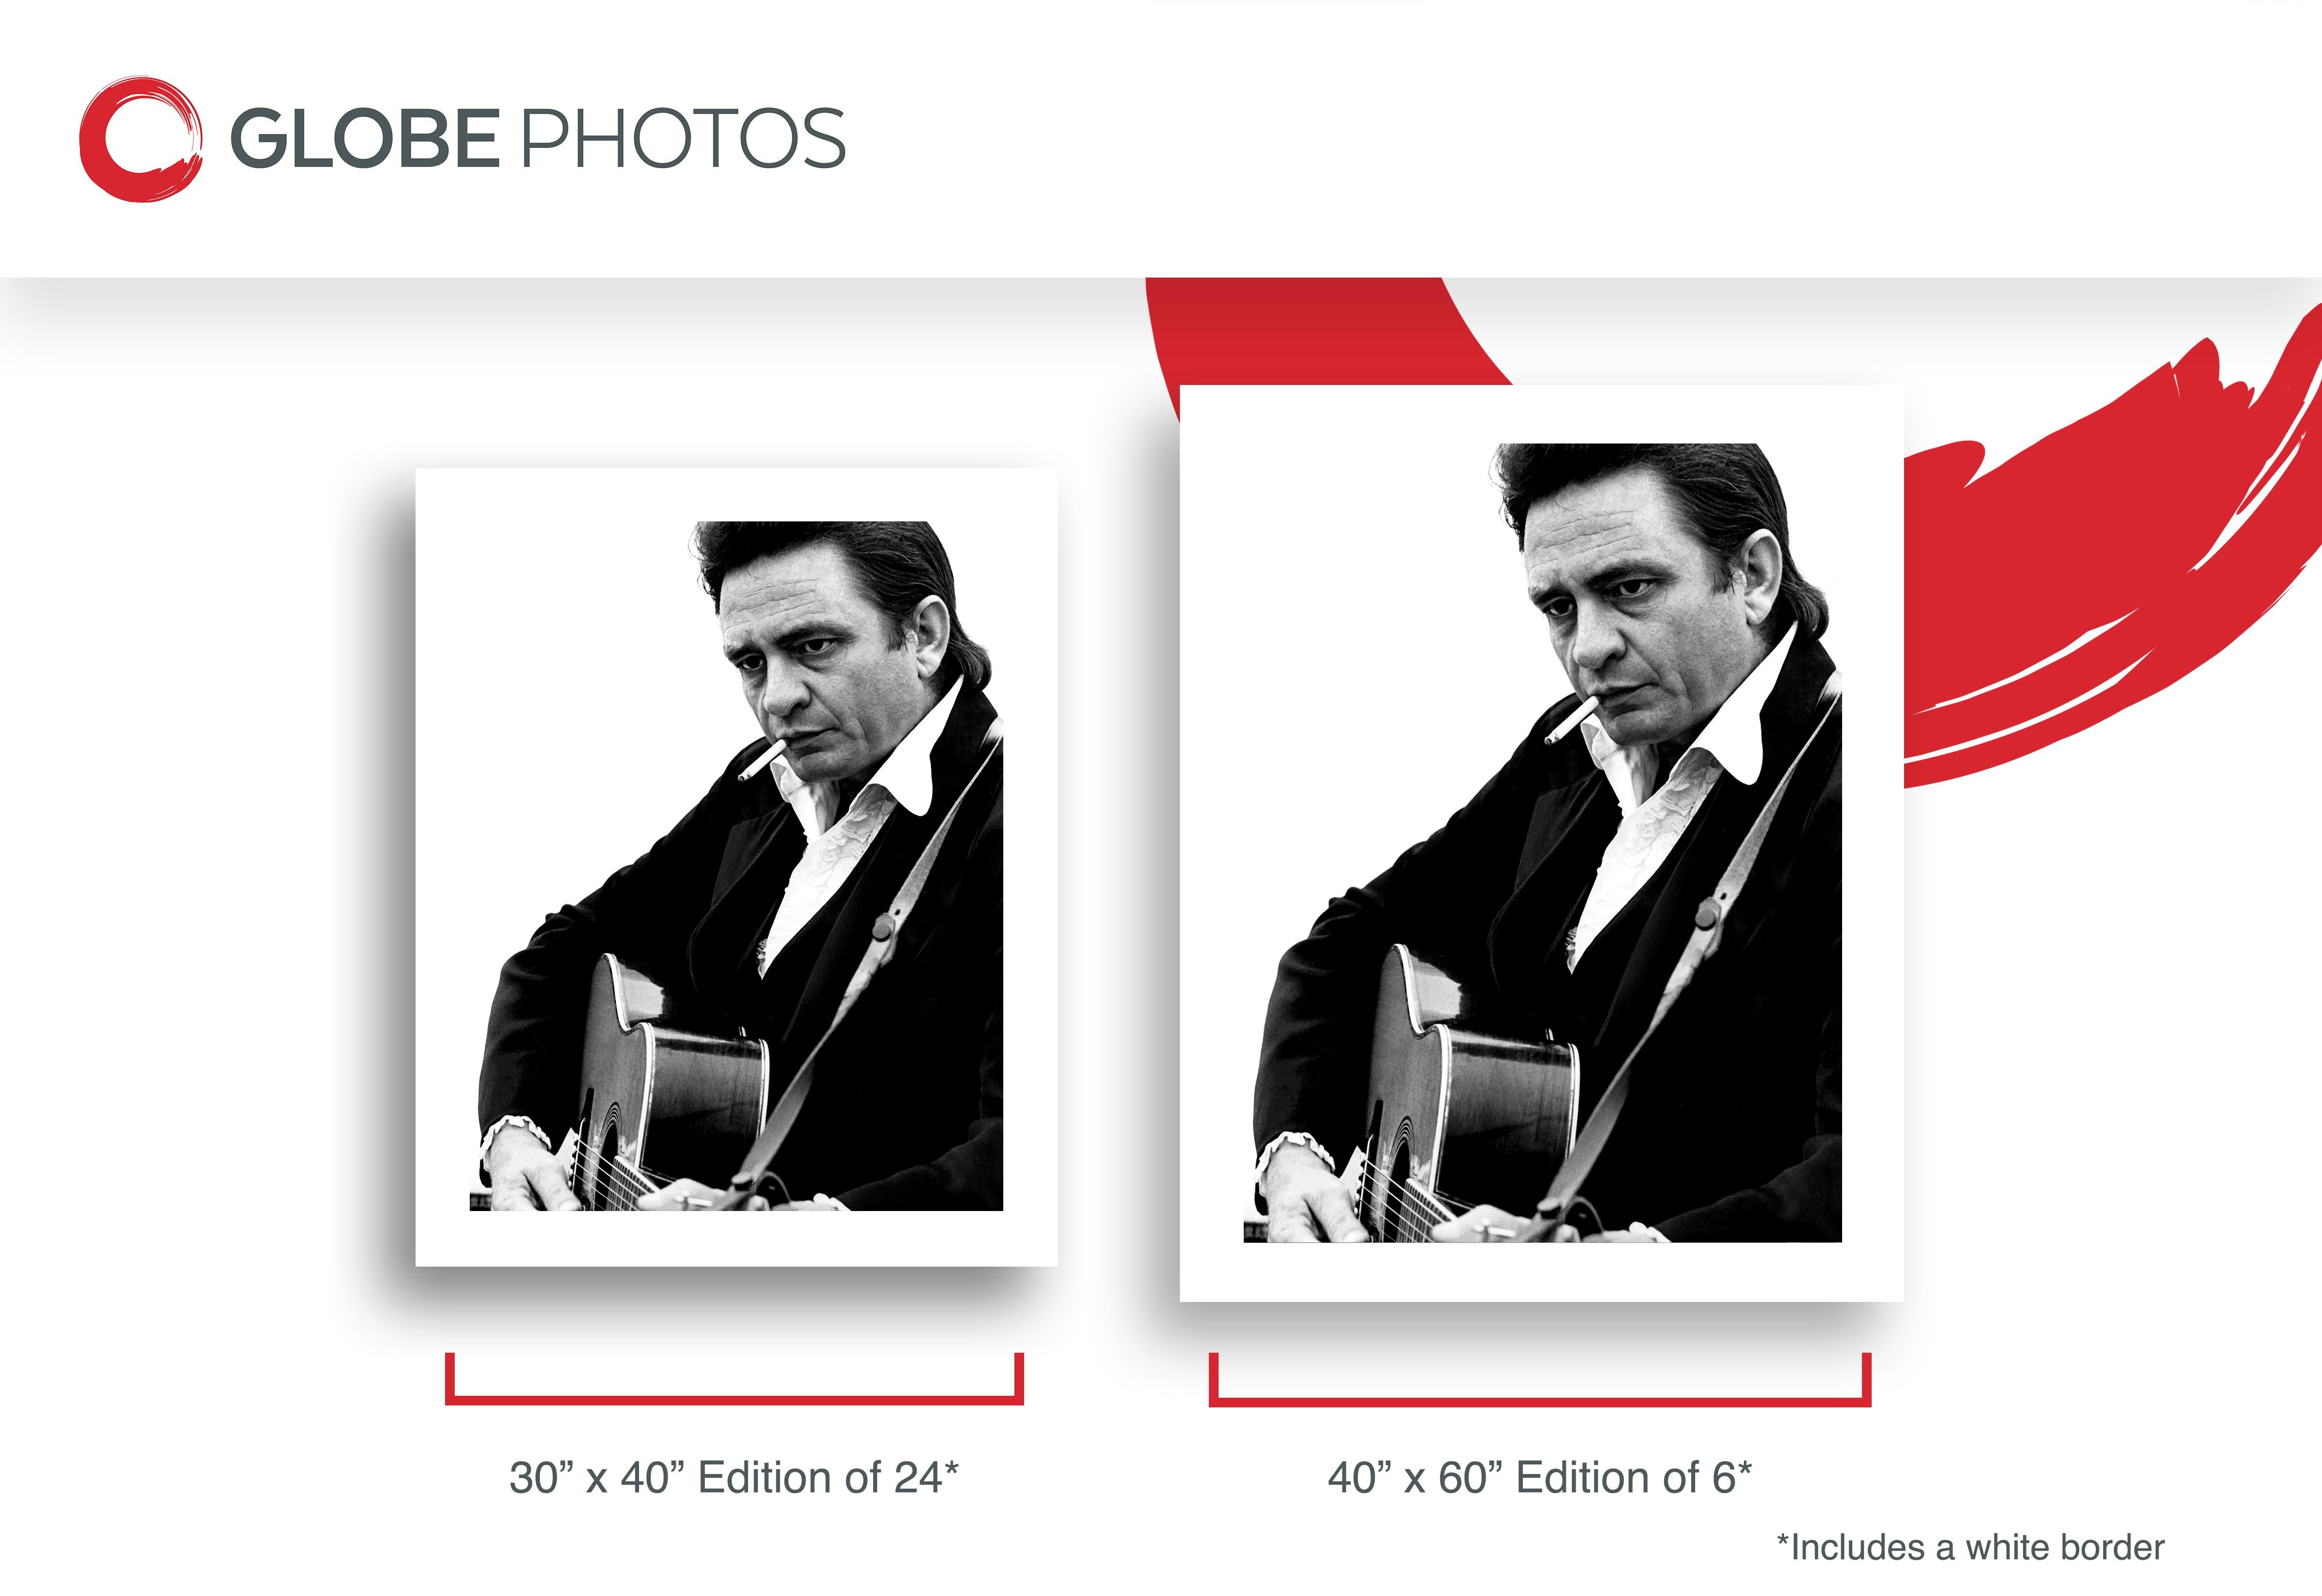 Beeindruckendes und einfaches Porträt des Musikers Johnny Cash, der vor dem Folsom Prison eine Zigarette raucht und Gitarre spielt, 1968.

Johnny Cash war ein amerikanischer Sänger, Songschreiber, Musiker und Schauspieler. Ein großer Teil von Cashs